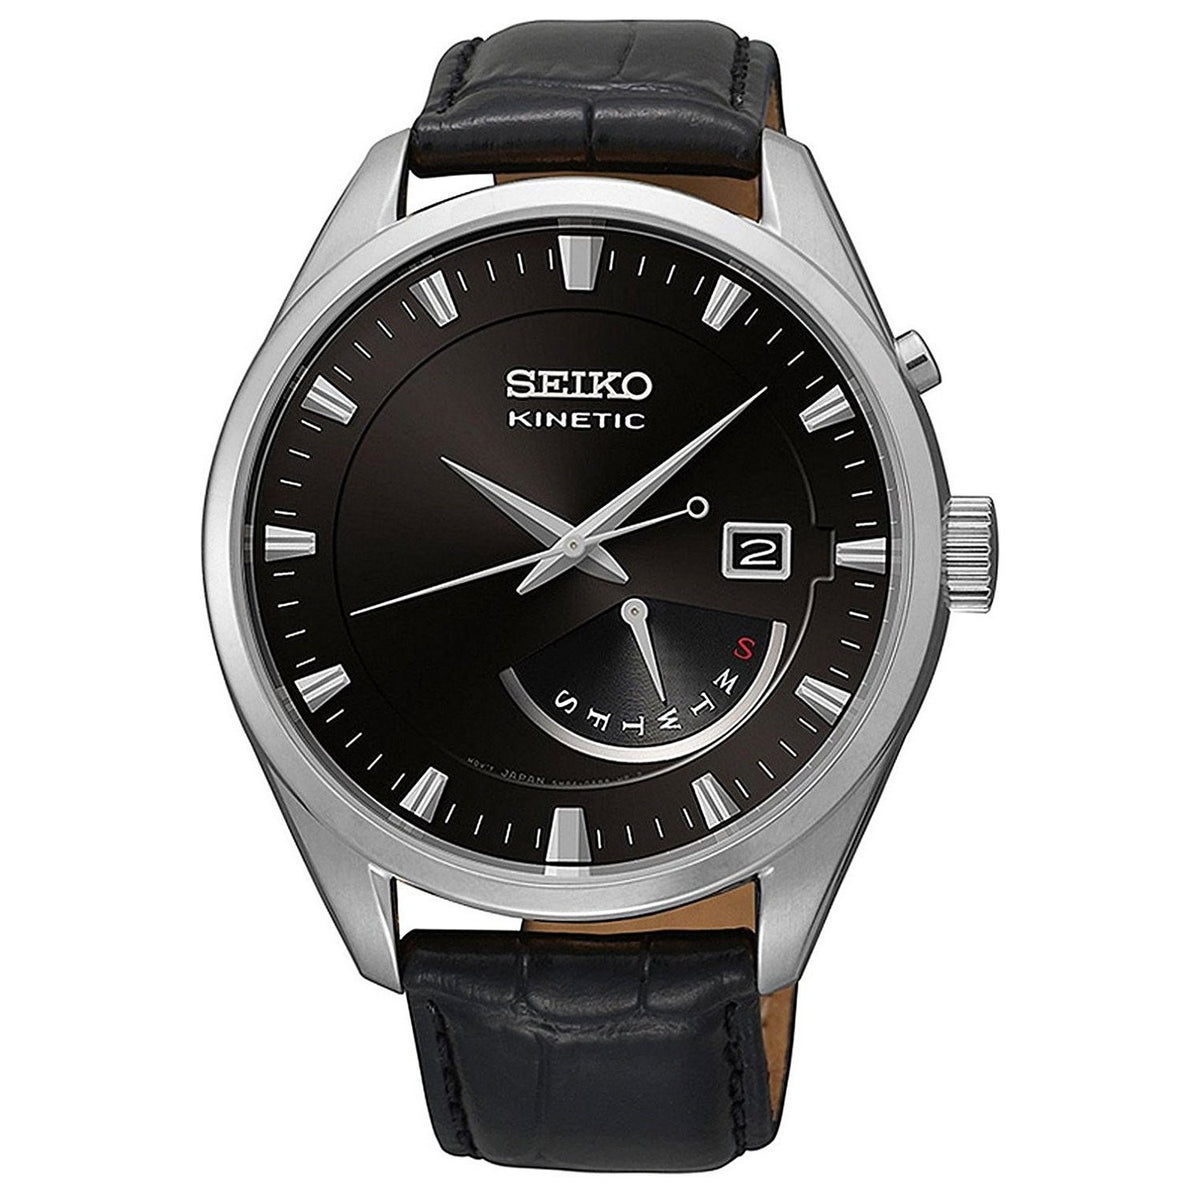 Sinewi voordeel Hoofdstraat Seiko Kinetic Kinetic Black Leather Watch SRN045P2 — 12oclock.us